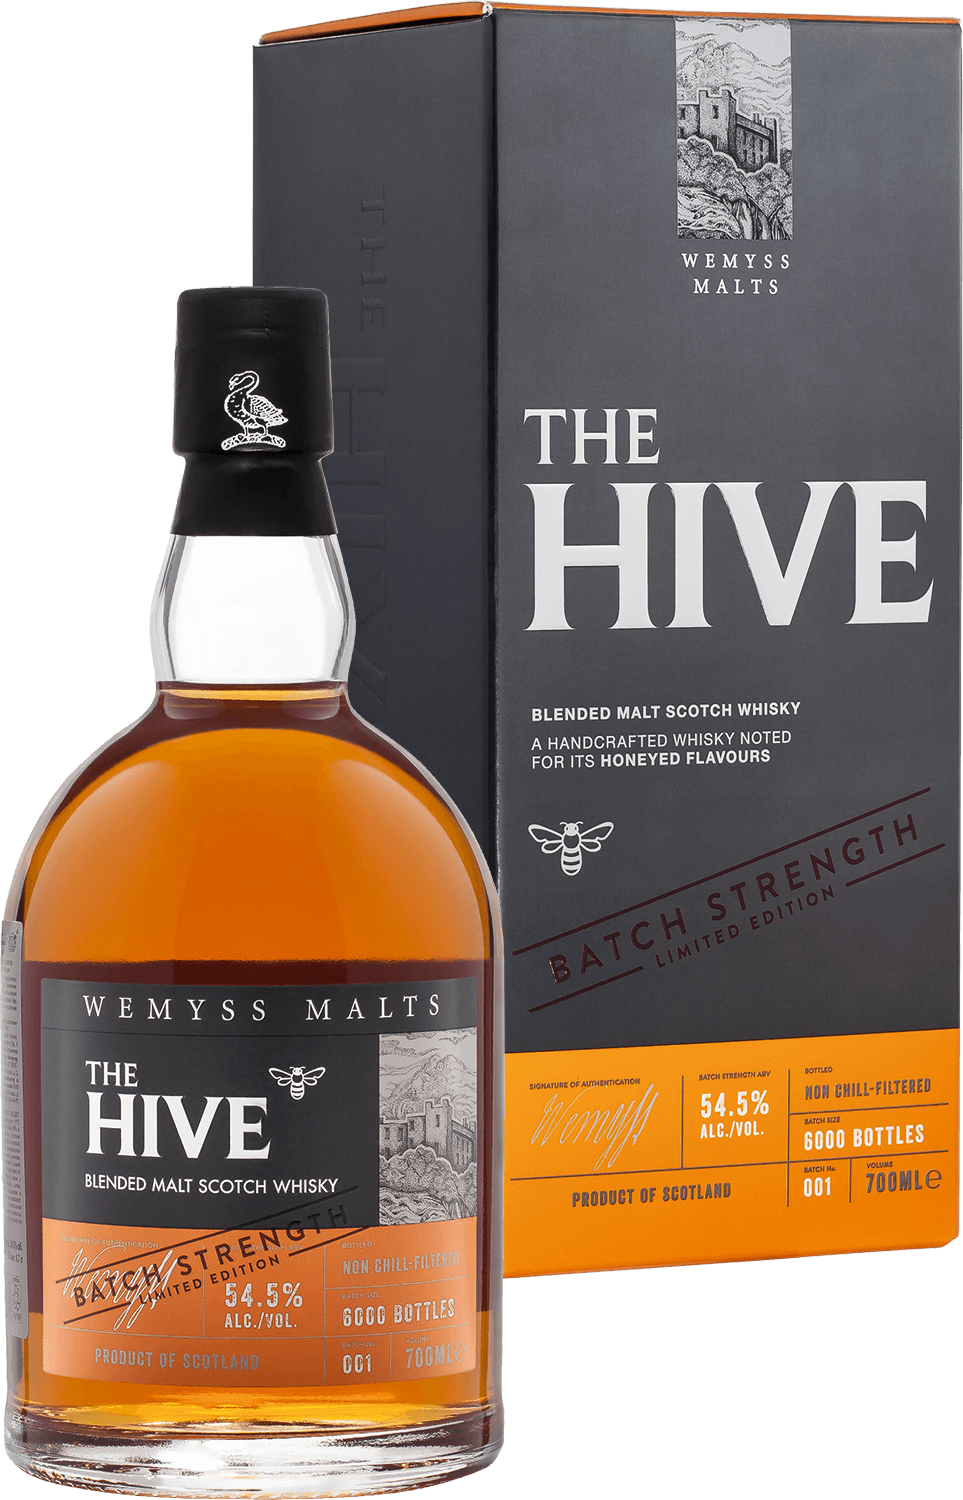 Wemyss Malts The Hive Batch Strength Blended Malt Scotch Whisky (gift box)